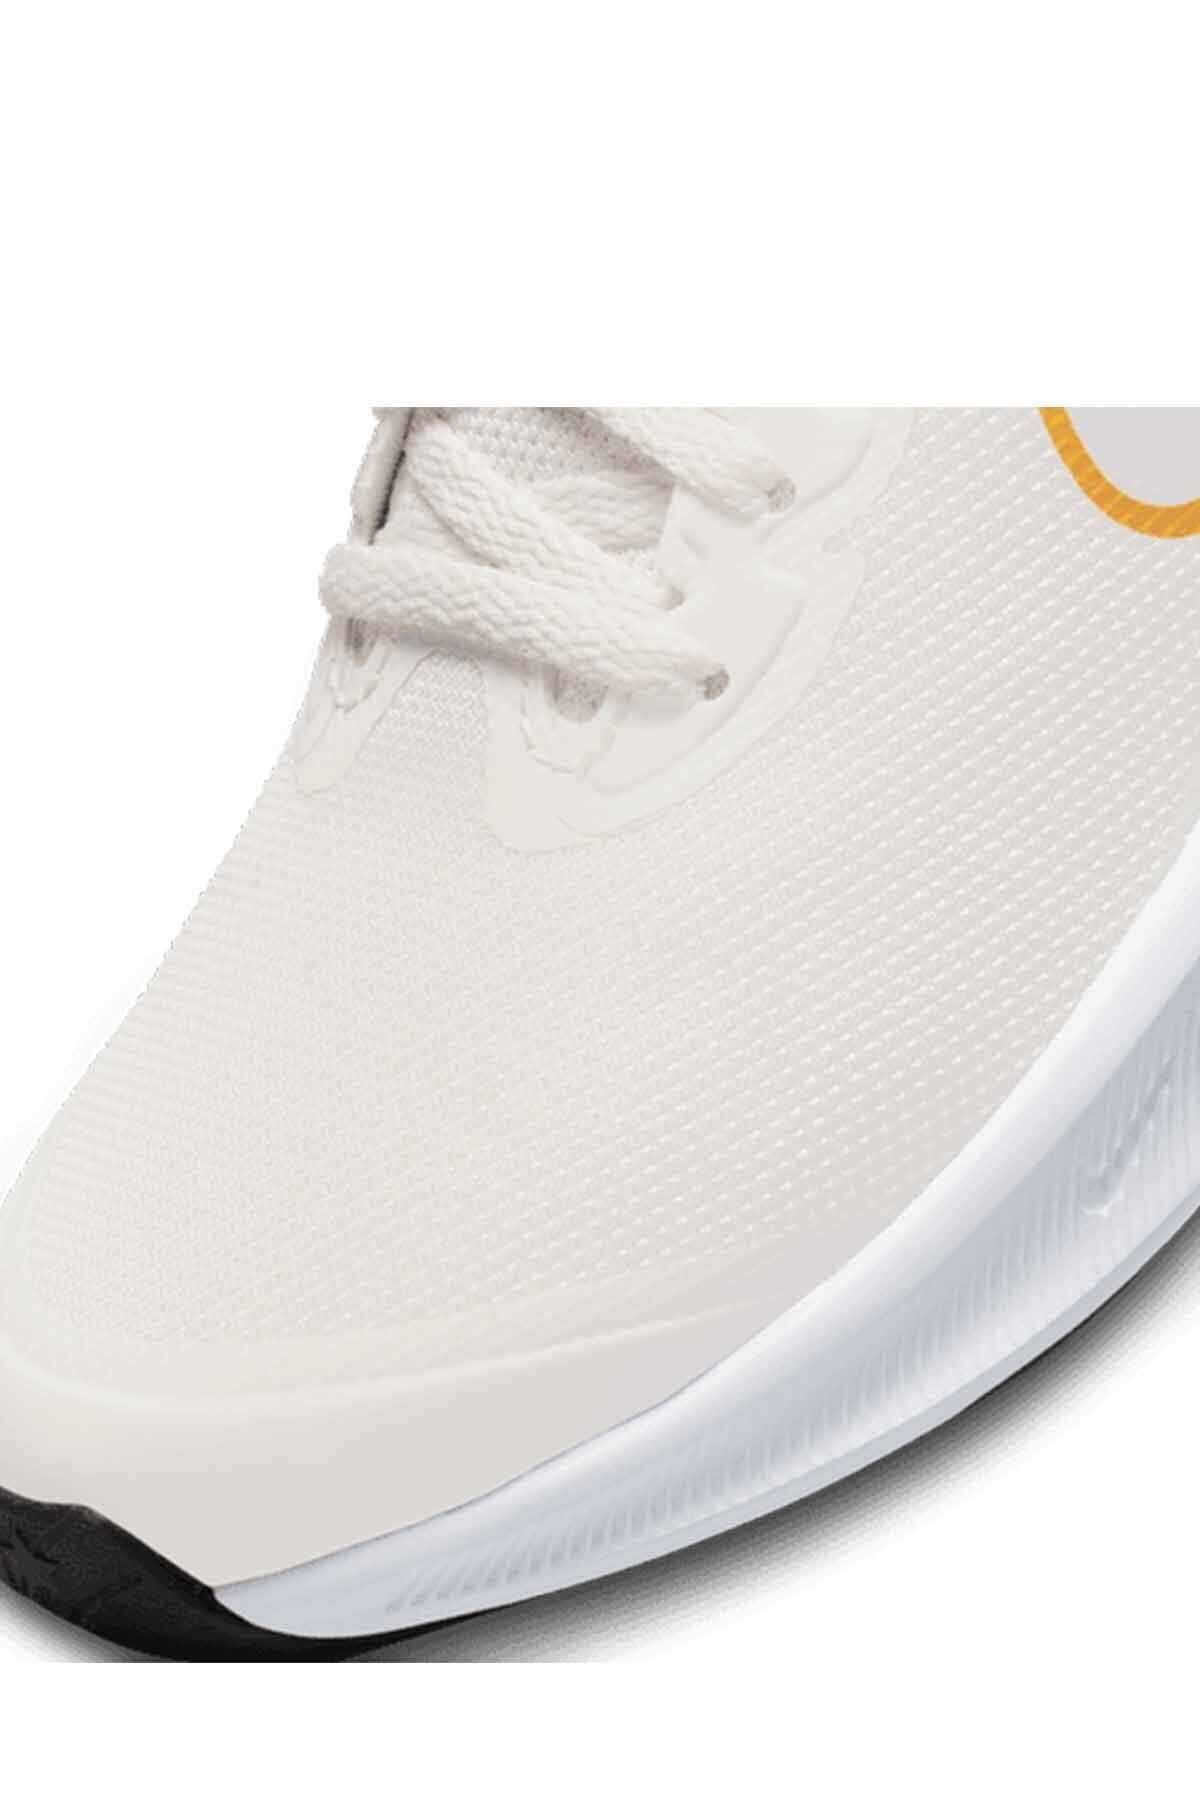 کفش رانینگ زنانه سری Star Runner 3 سفید برند Nike 